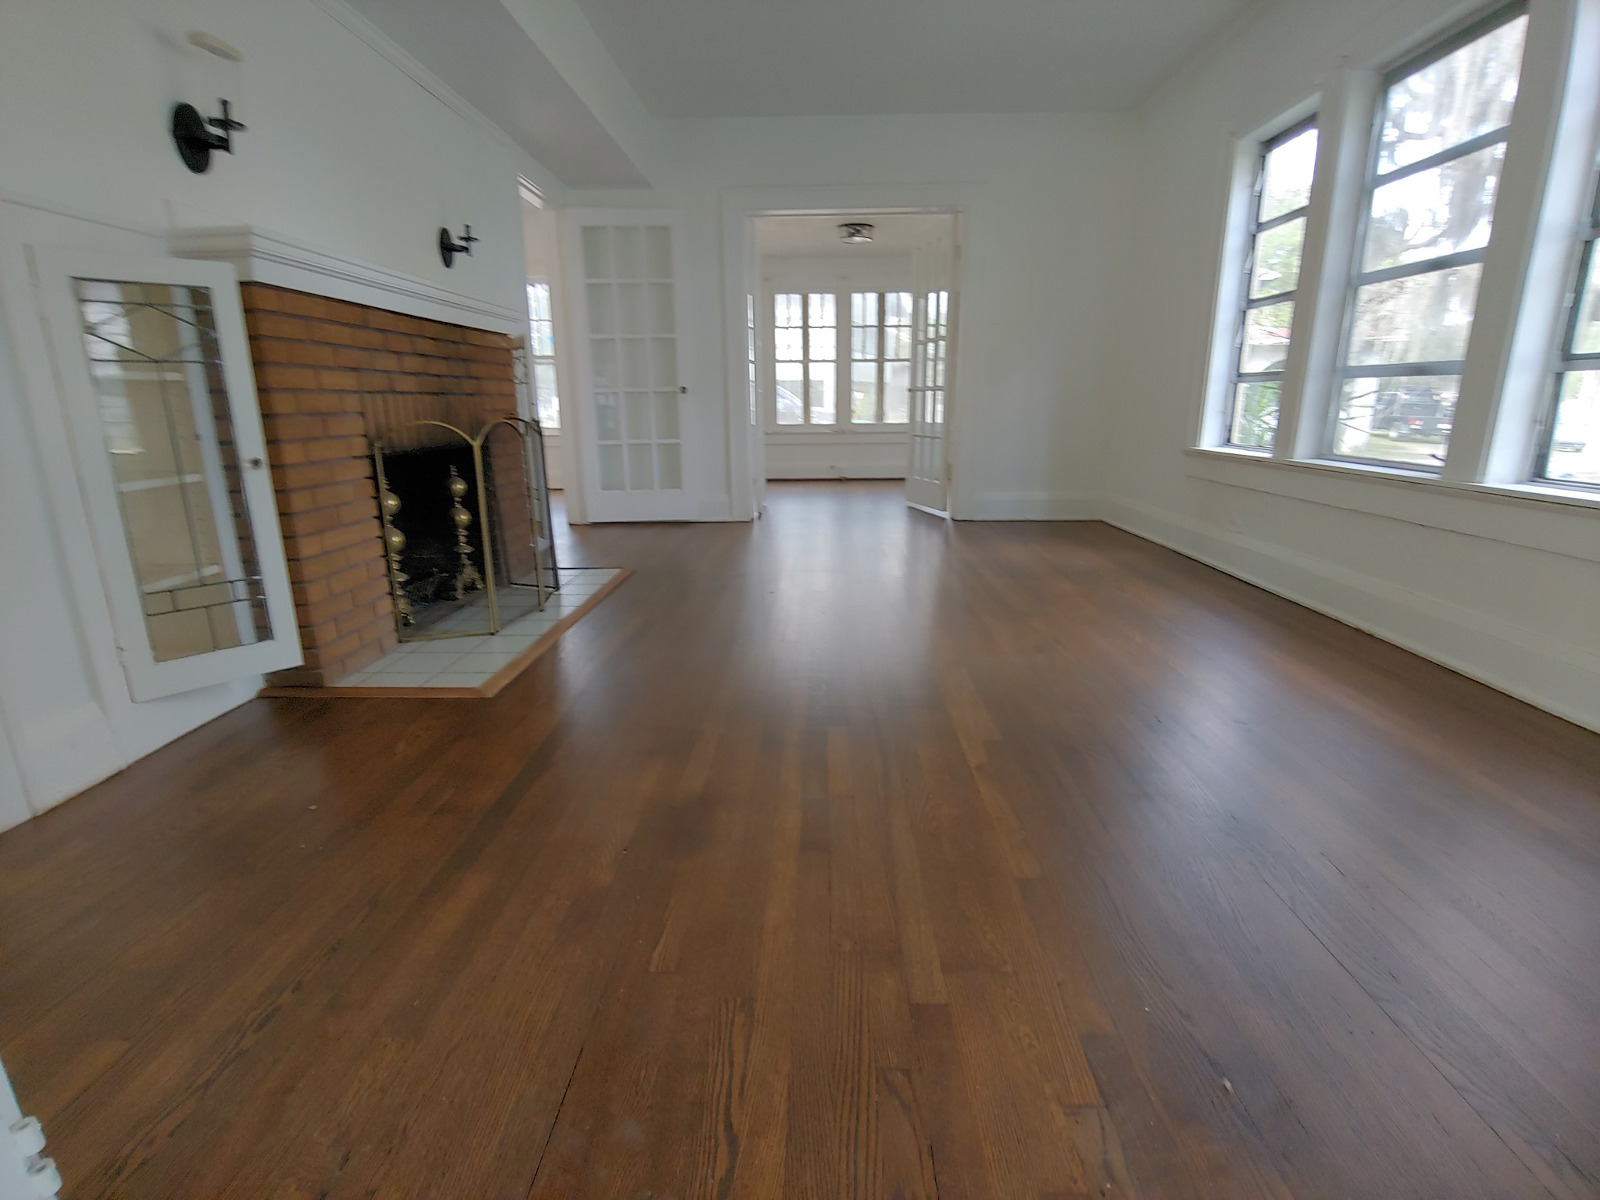 Floor Restore & More | Blog | Now Serving Lakeland for Hardwood Floor Refinishing